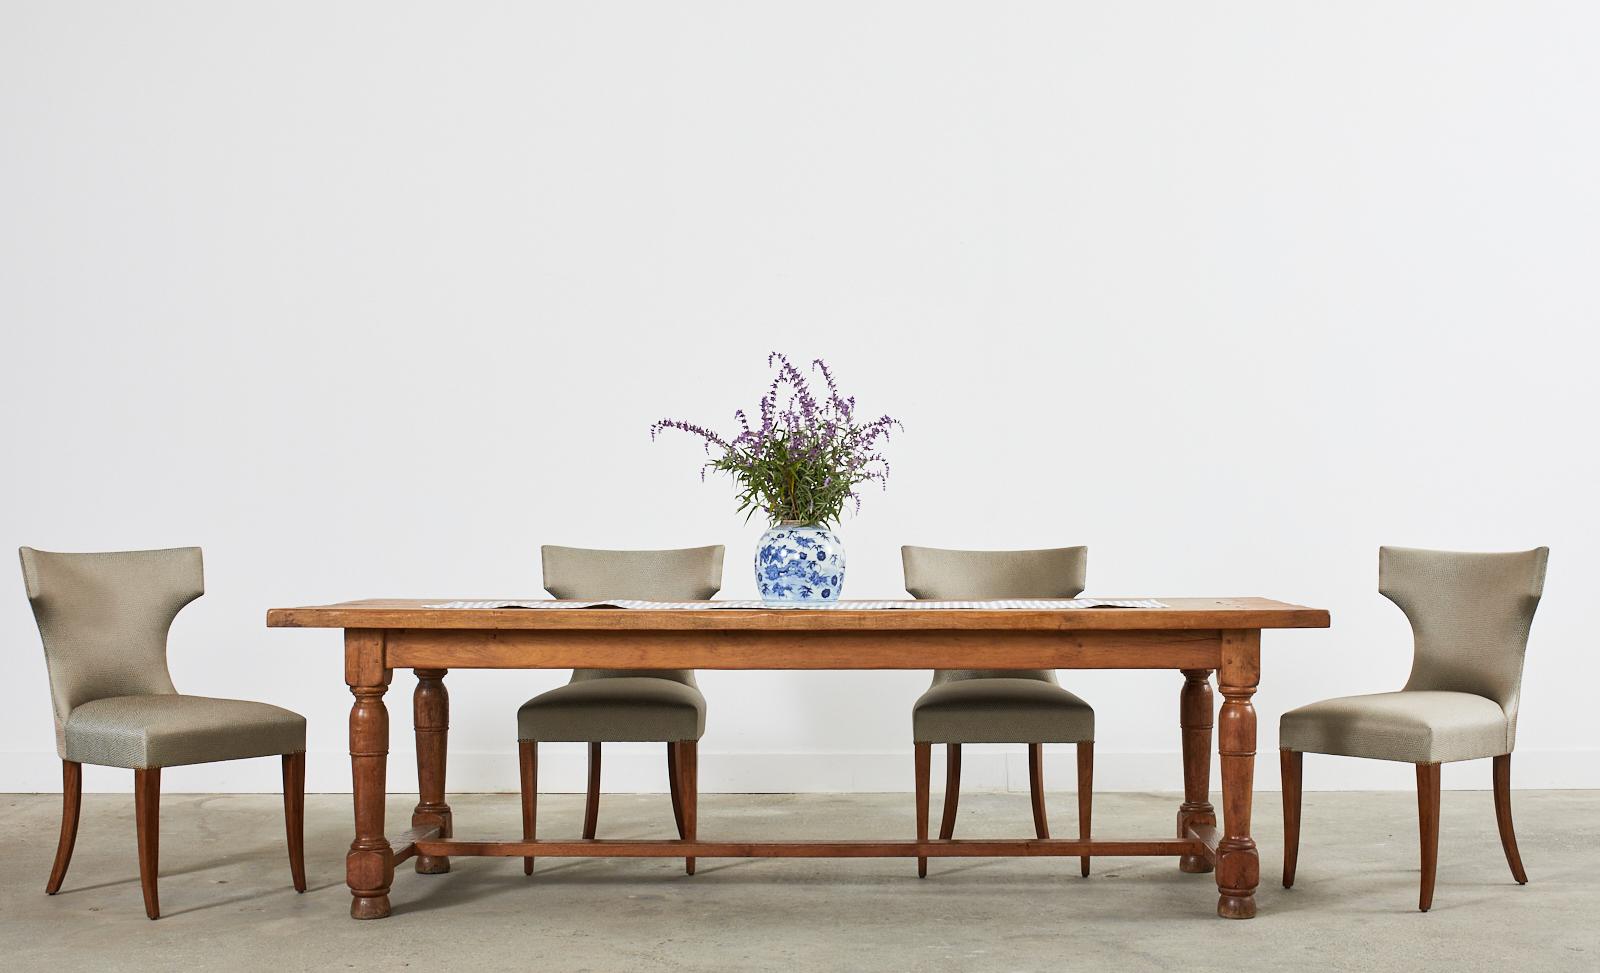 Chaises de salle à manger iconiques de style klismos conçues par Kerry Joyce pour Dessin Fournir. Les chaises sont dotées d'un cadre en noyer et d'un profil spectaculaire, et sont tapissées d'un tissu Corsica texturé et chatoyant, dans les tons vert